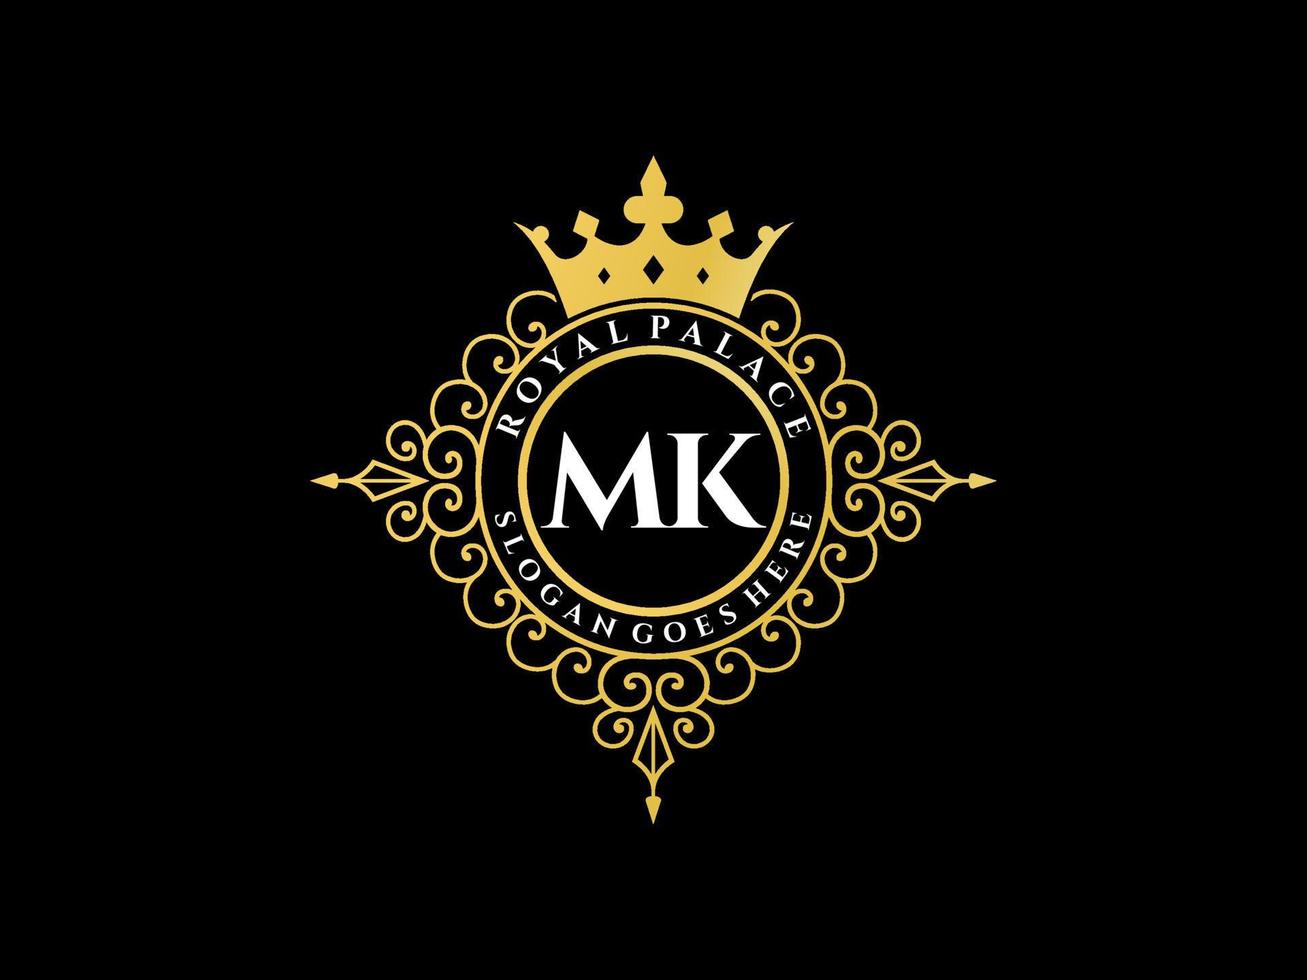 letra mk logotipo victoriano de lujo real antiguo con marco ornamental. vector